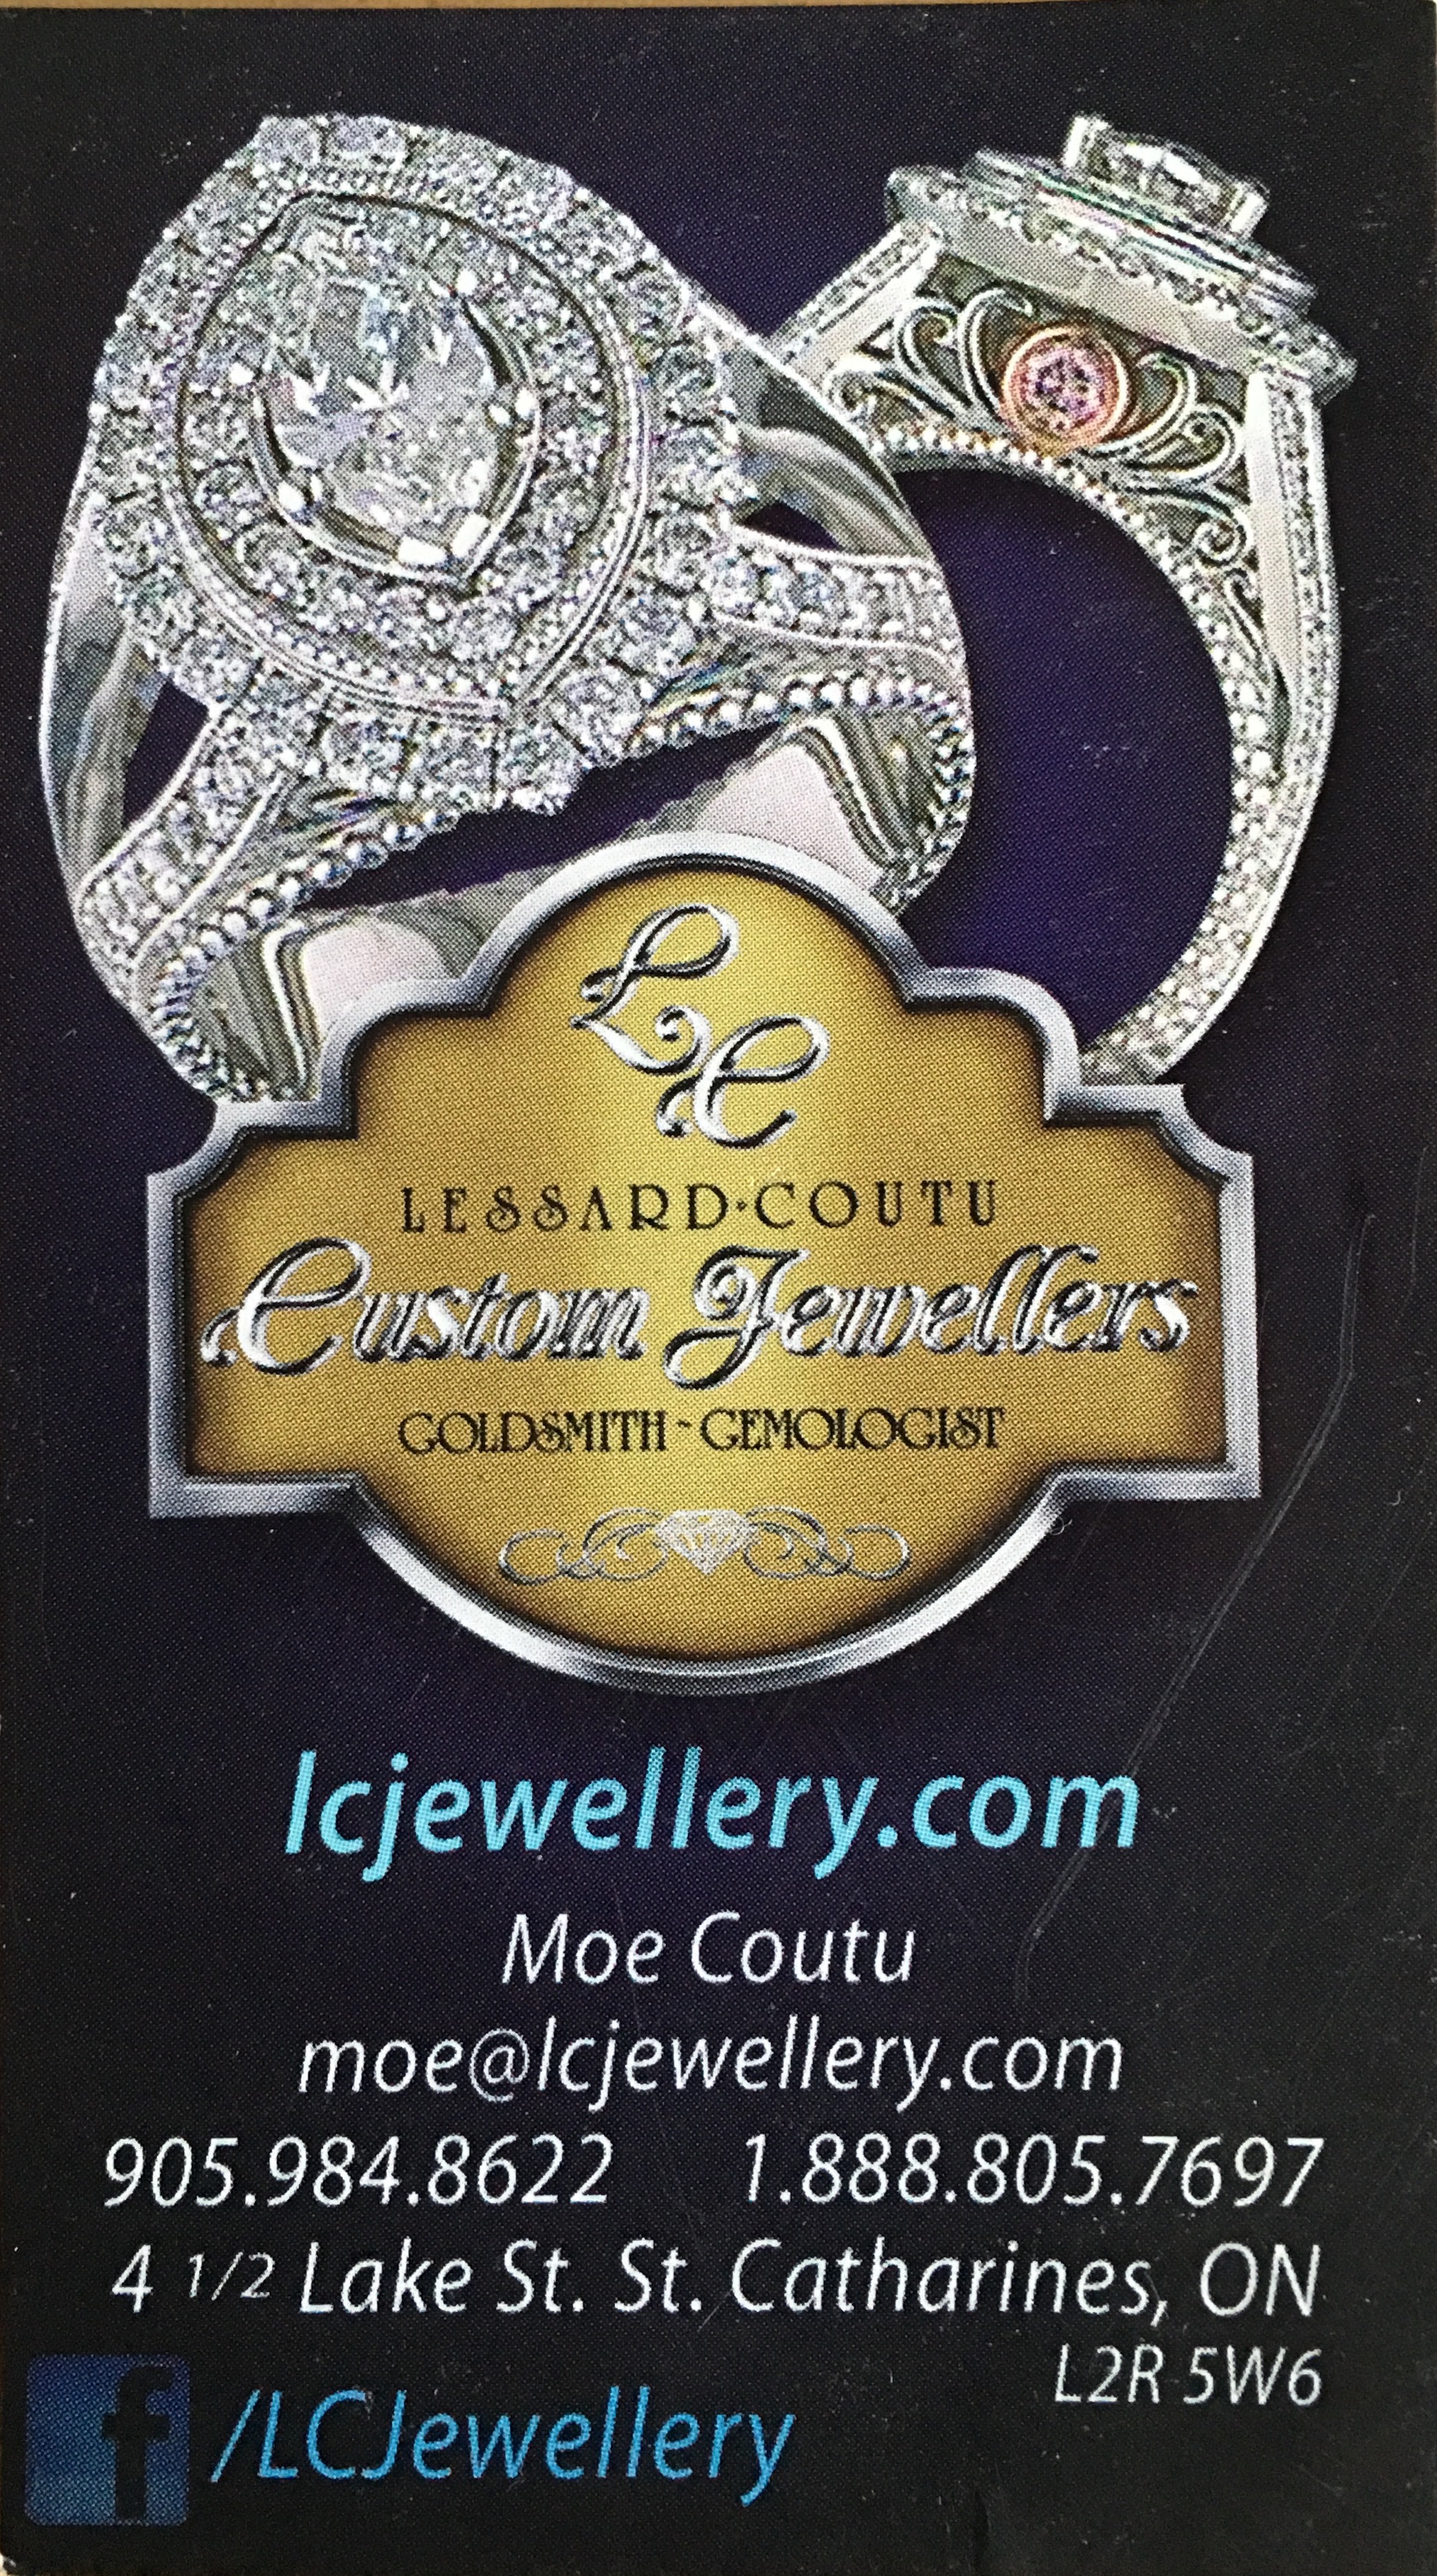 LC Jewellery